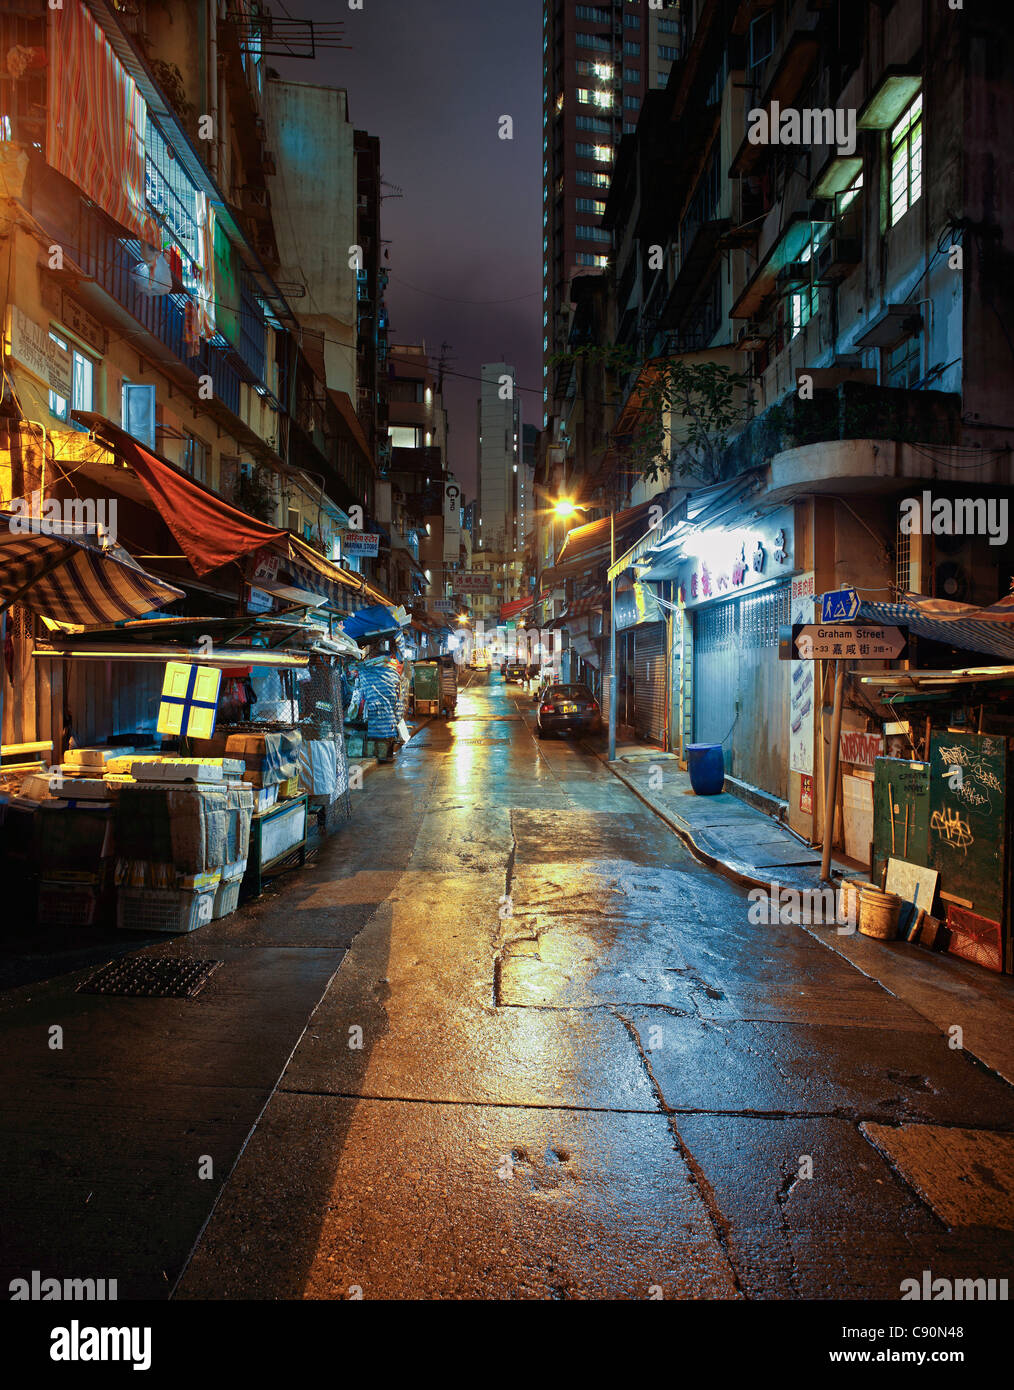 Fishmonger stall in the Soho District at night, Hong Kong, China Stock Photo